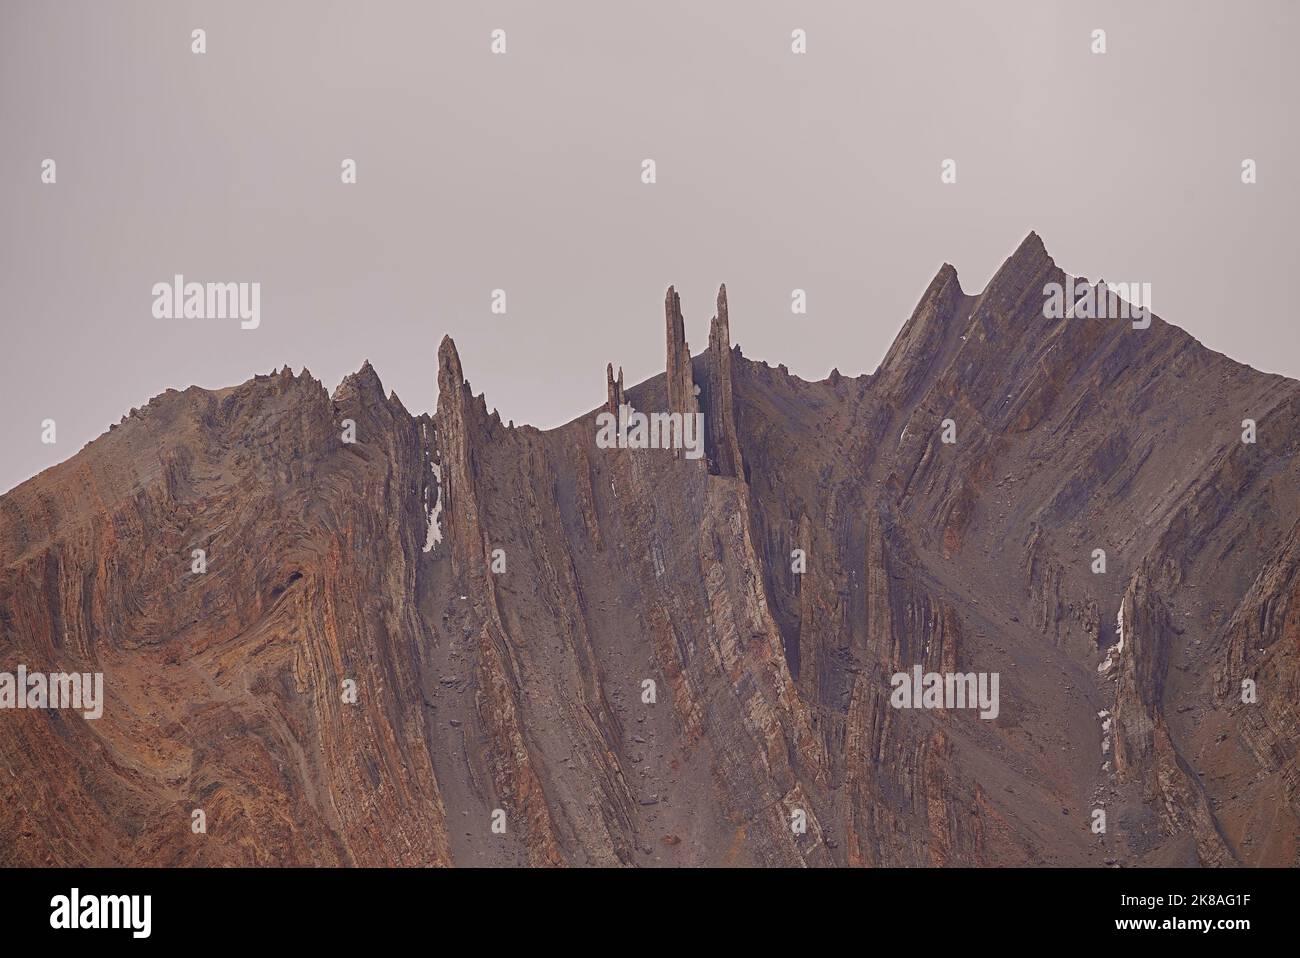 Insolitamente frastagliato picchi aguzzi strutture geologiche a causa di erosione in alta quota deserti freddi di Ladakh Foto Stock